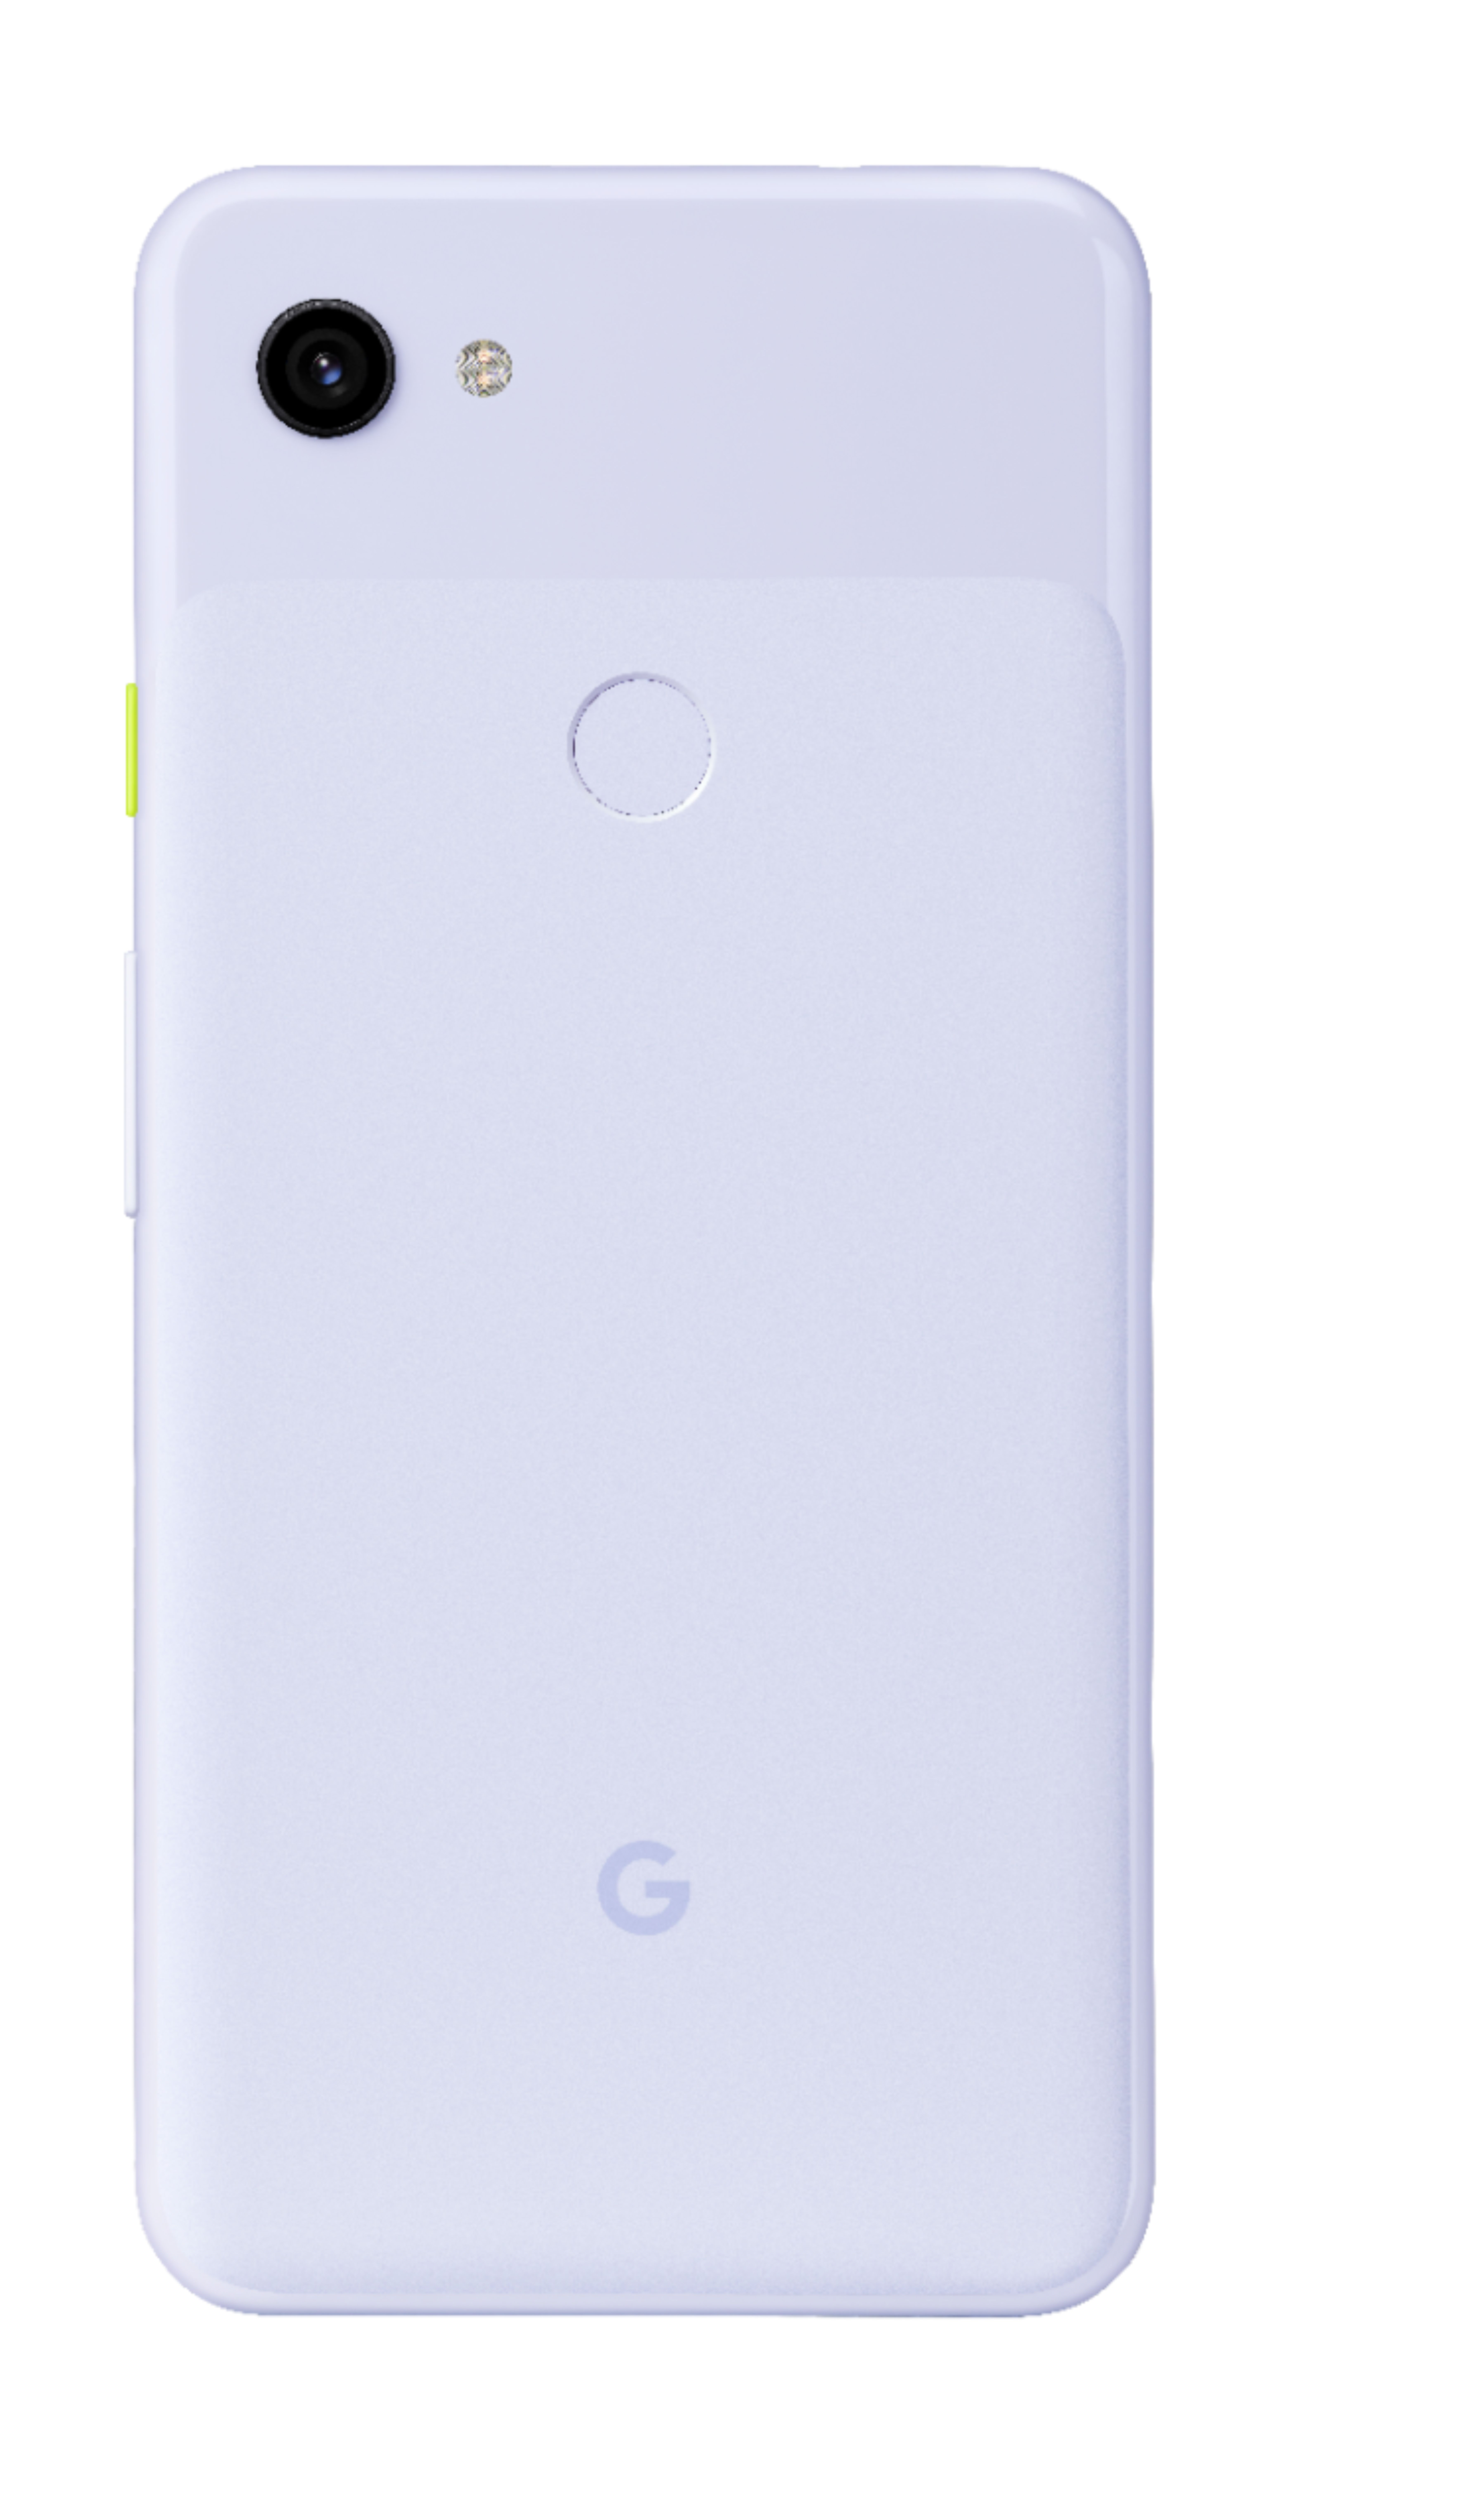 Google Pixel 3a Xl - 64gb (Unlocked) - Purple-Ish - Big Apple Buddy